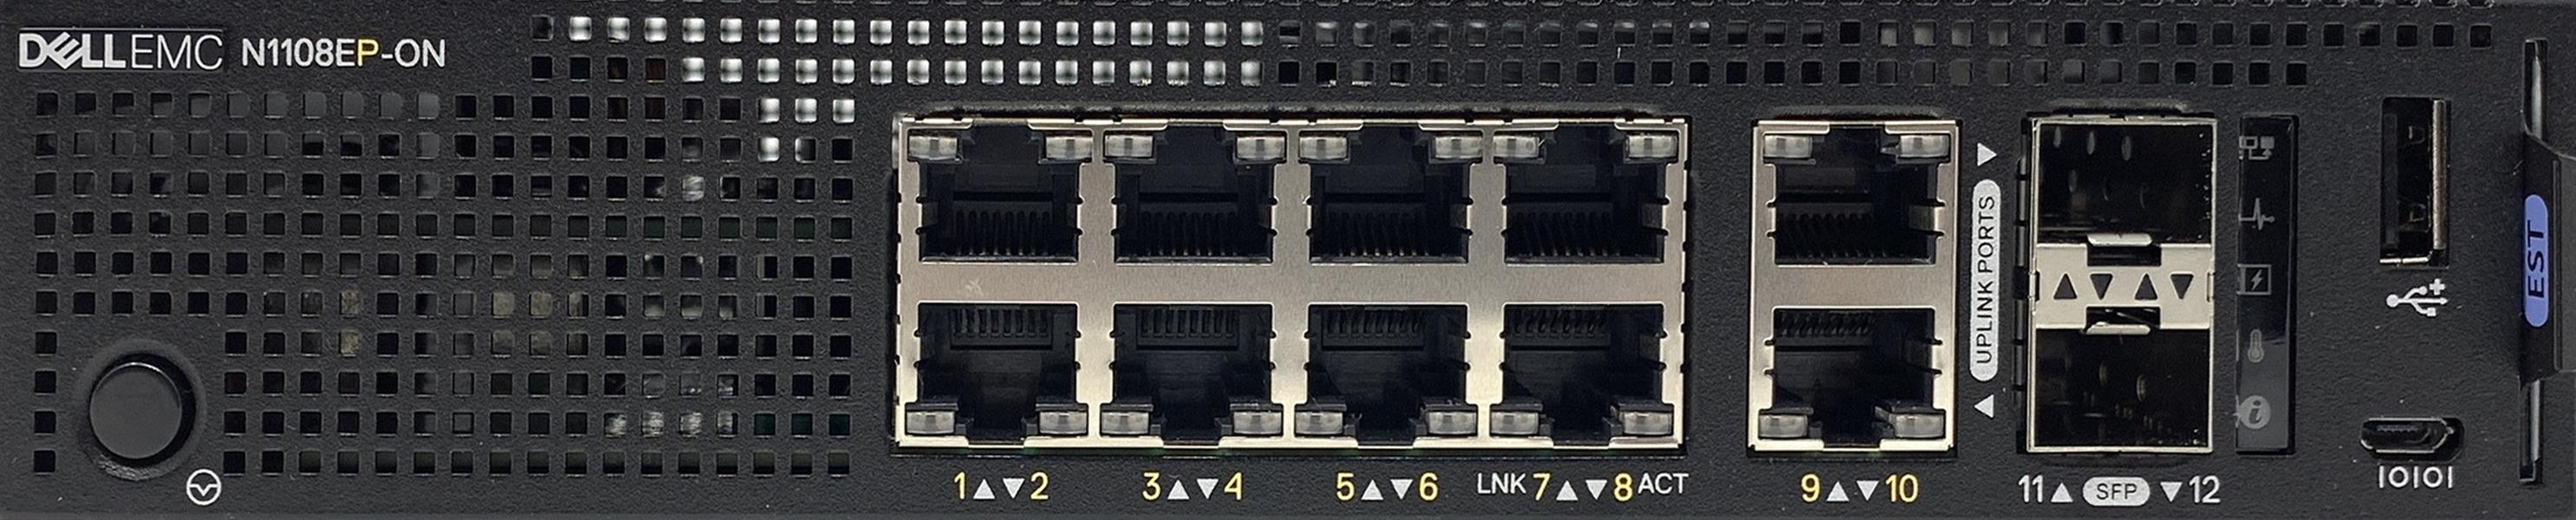 DELL N-Series N1108EP-ON Managed L2 Gigabit Ethernet (10/100/1000) Power over Ethernet (PoE) 1U Zwart